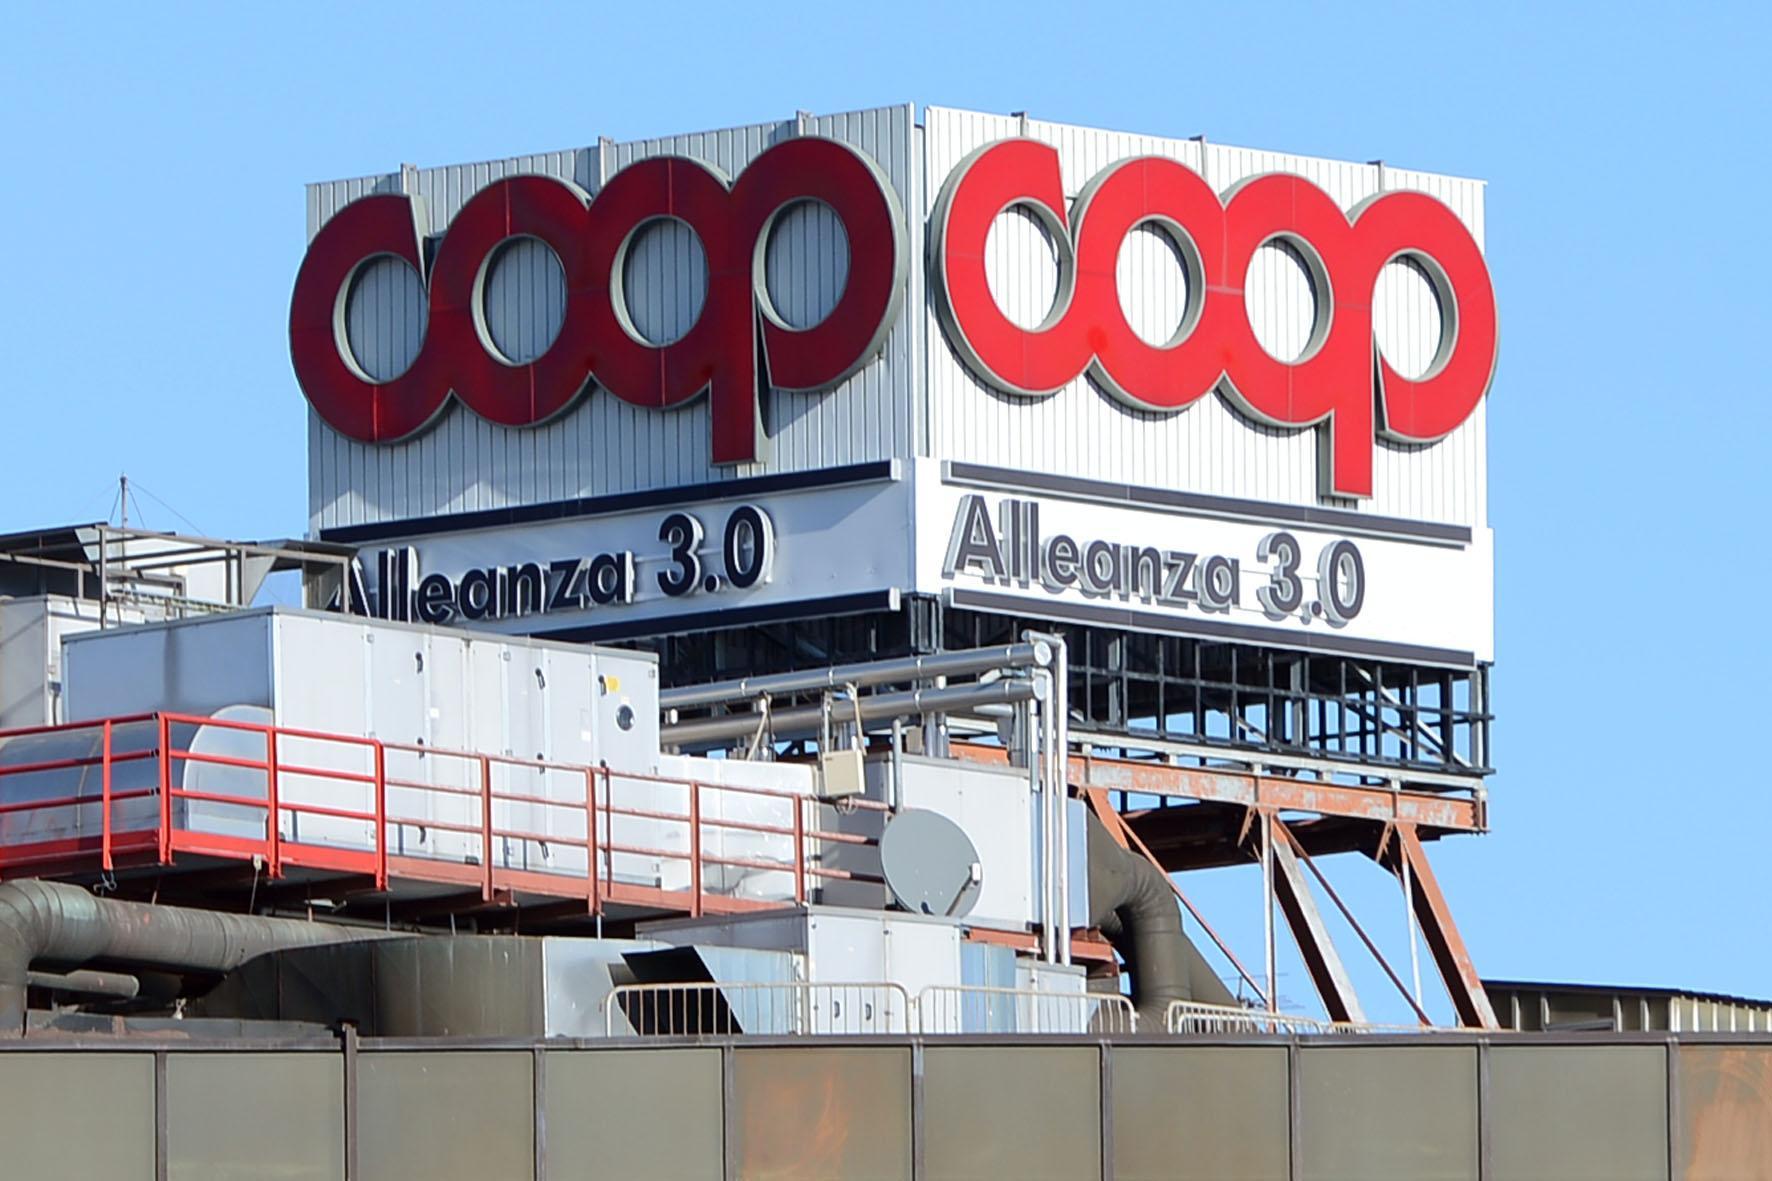 Coop Alleanza 3.0, gli impiegati modenesi "La stravolgerà le nostre vite